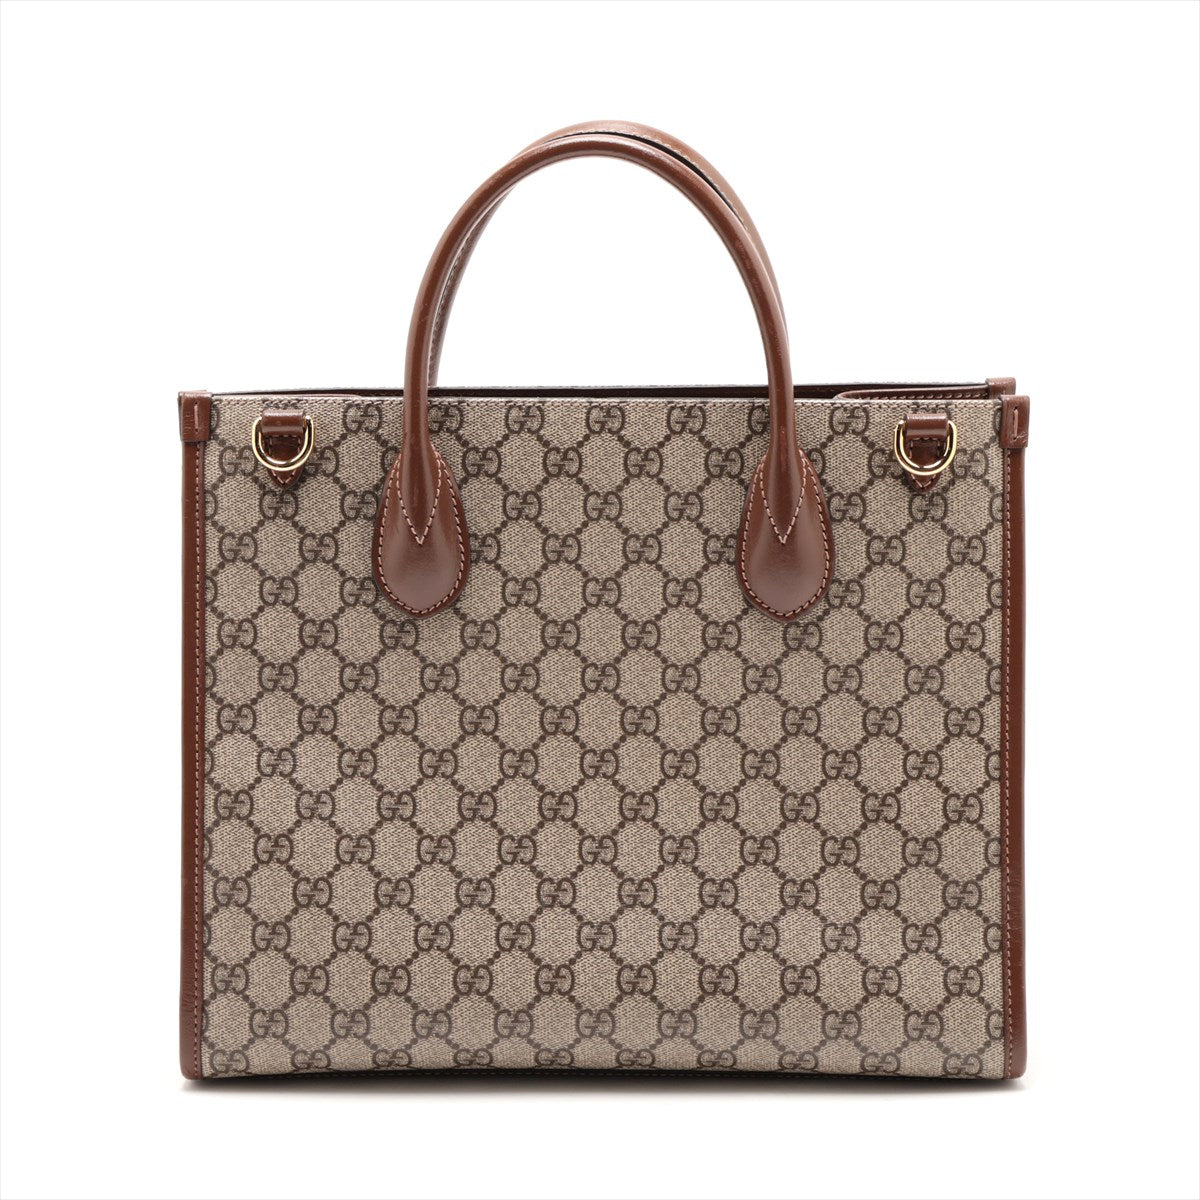 Gucci GG Supreme 2WAY Handbag Brown 659983